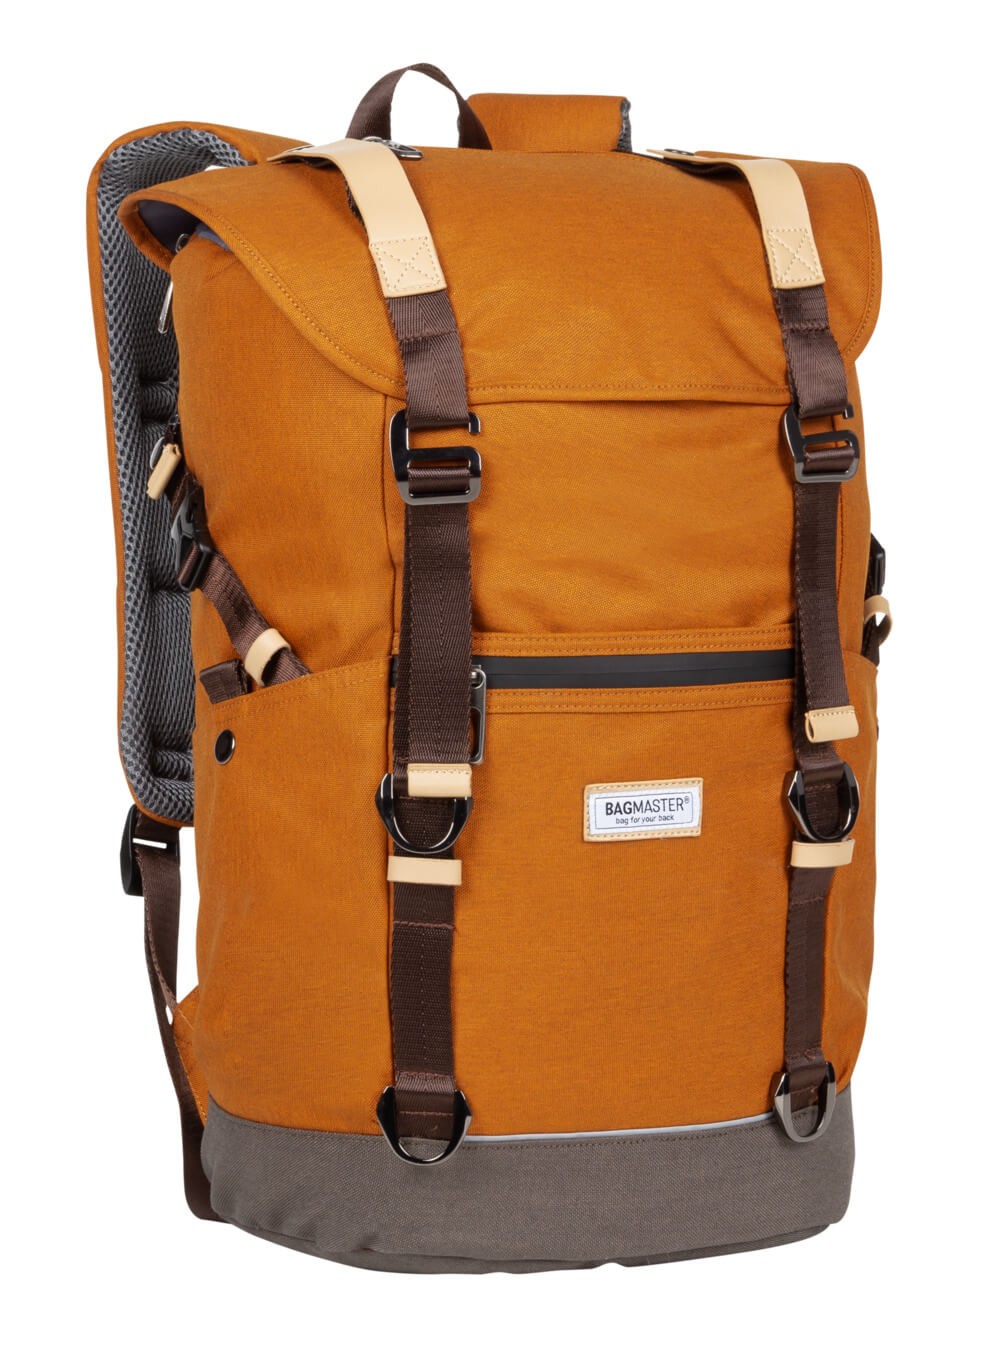 Městský batoh MESSENGER 20 A - oranžový